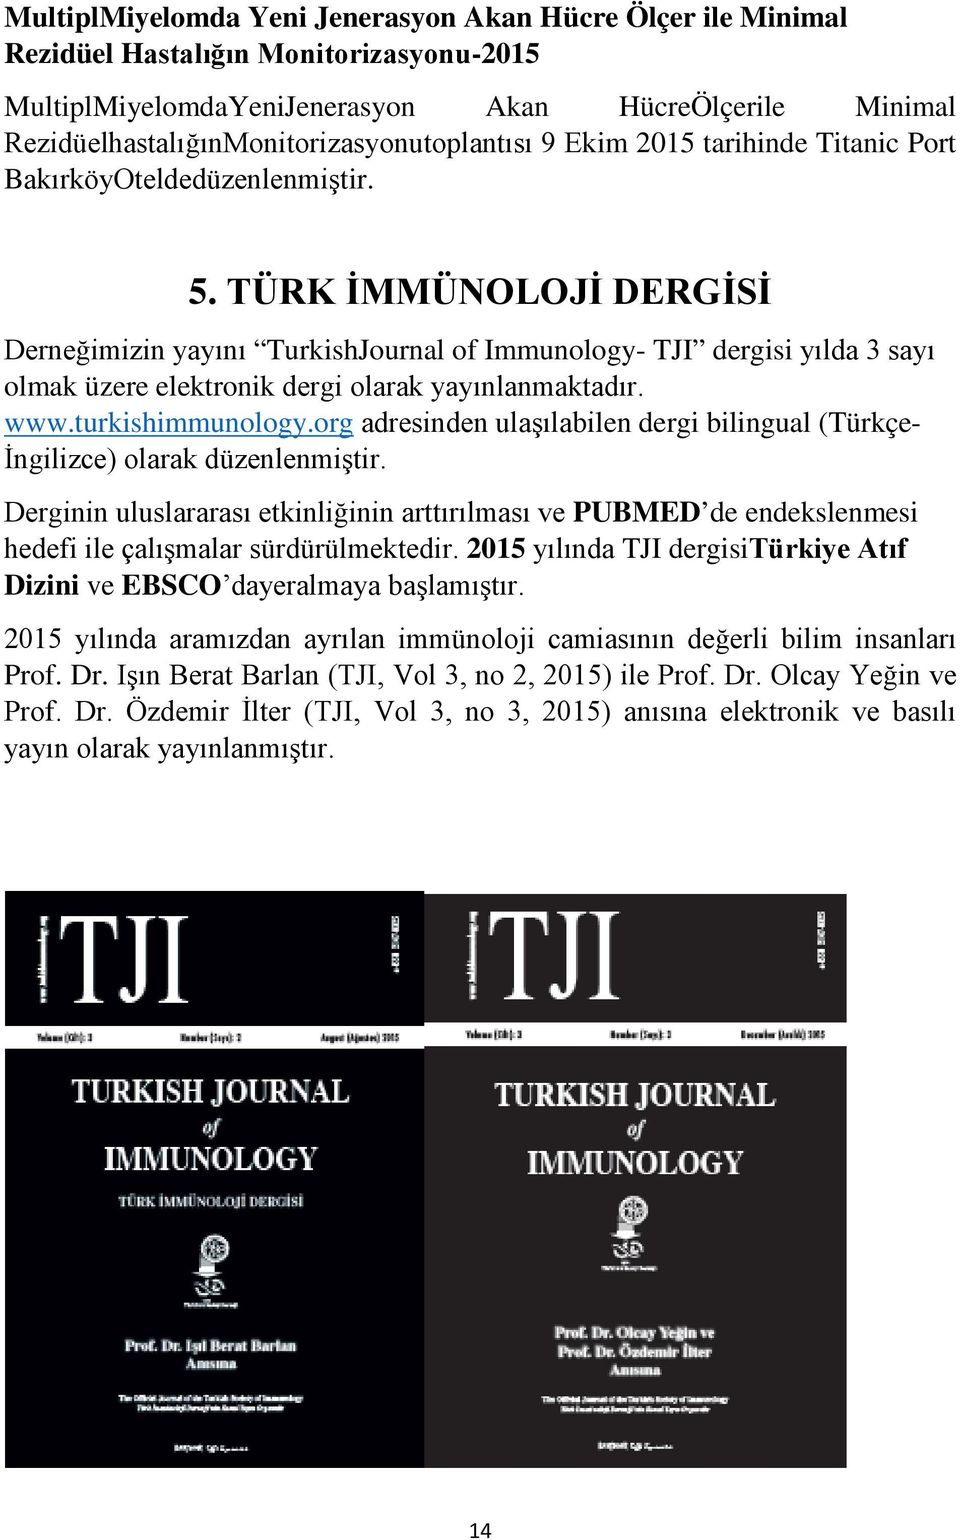 TÜRK İMMÜNOLOJİ DERGİSİ Derneğimizin yayını TurkishJournal of Immunology- TJI dergisi yılda 3 sayı olmak üzere elektronik dergi olarak yayınlanmaktadır. www.turkishimmunology.